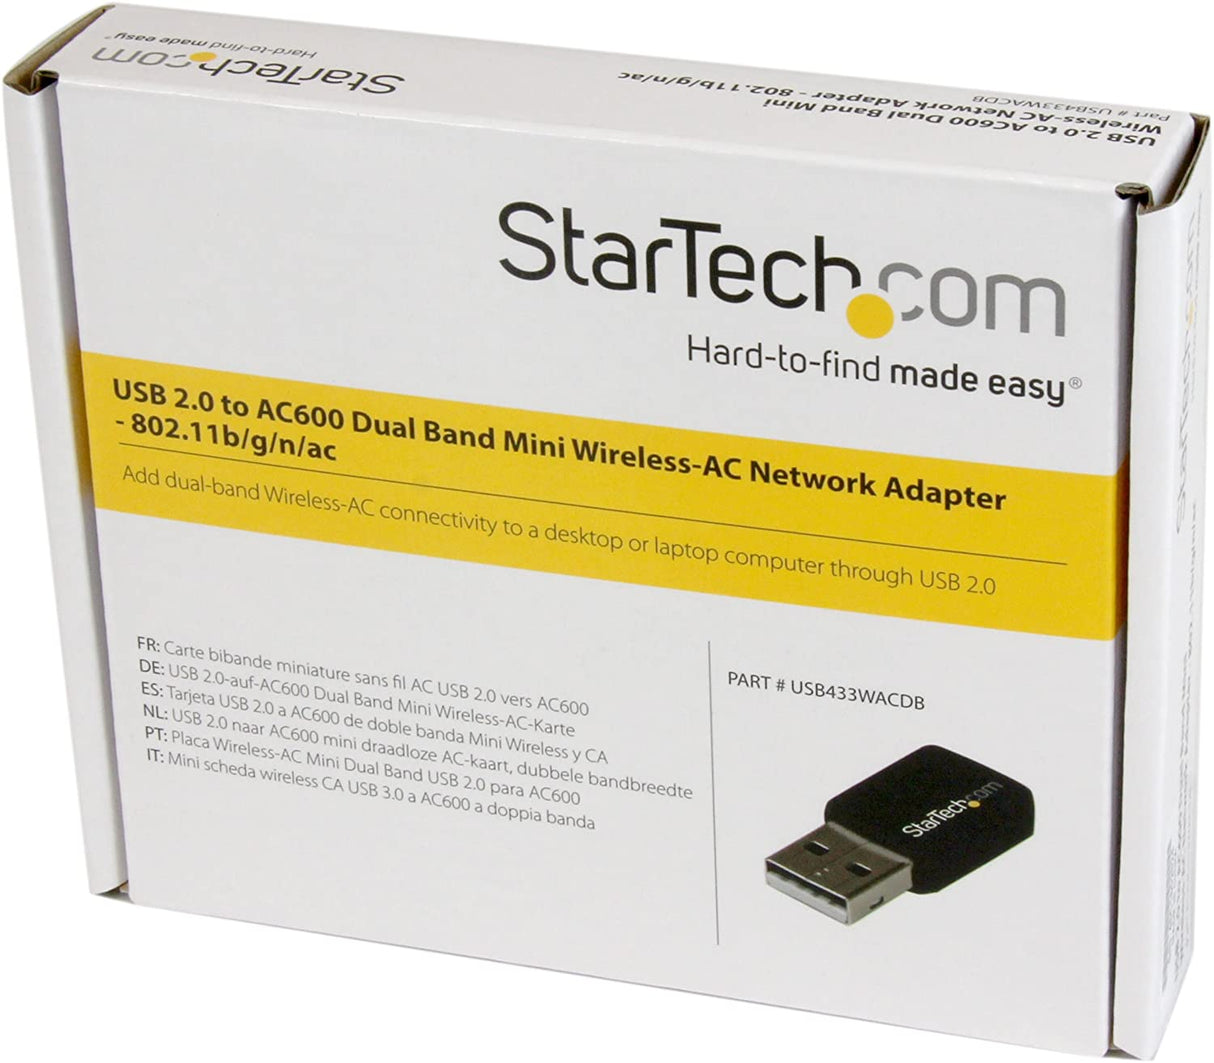 StarTech.com USB 2.0 AC600 Mini Dual Band Wireless-AC Network Adapter - 1T1R 802.11ac WiFi Adapter - 2.4GHz / 5GHz USB Wireless (USB433WACDB), Black